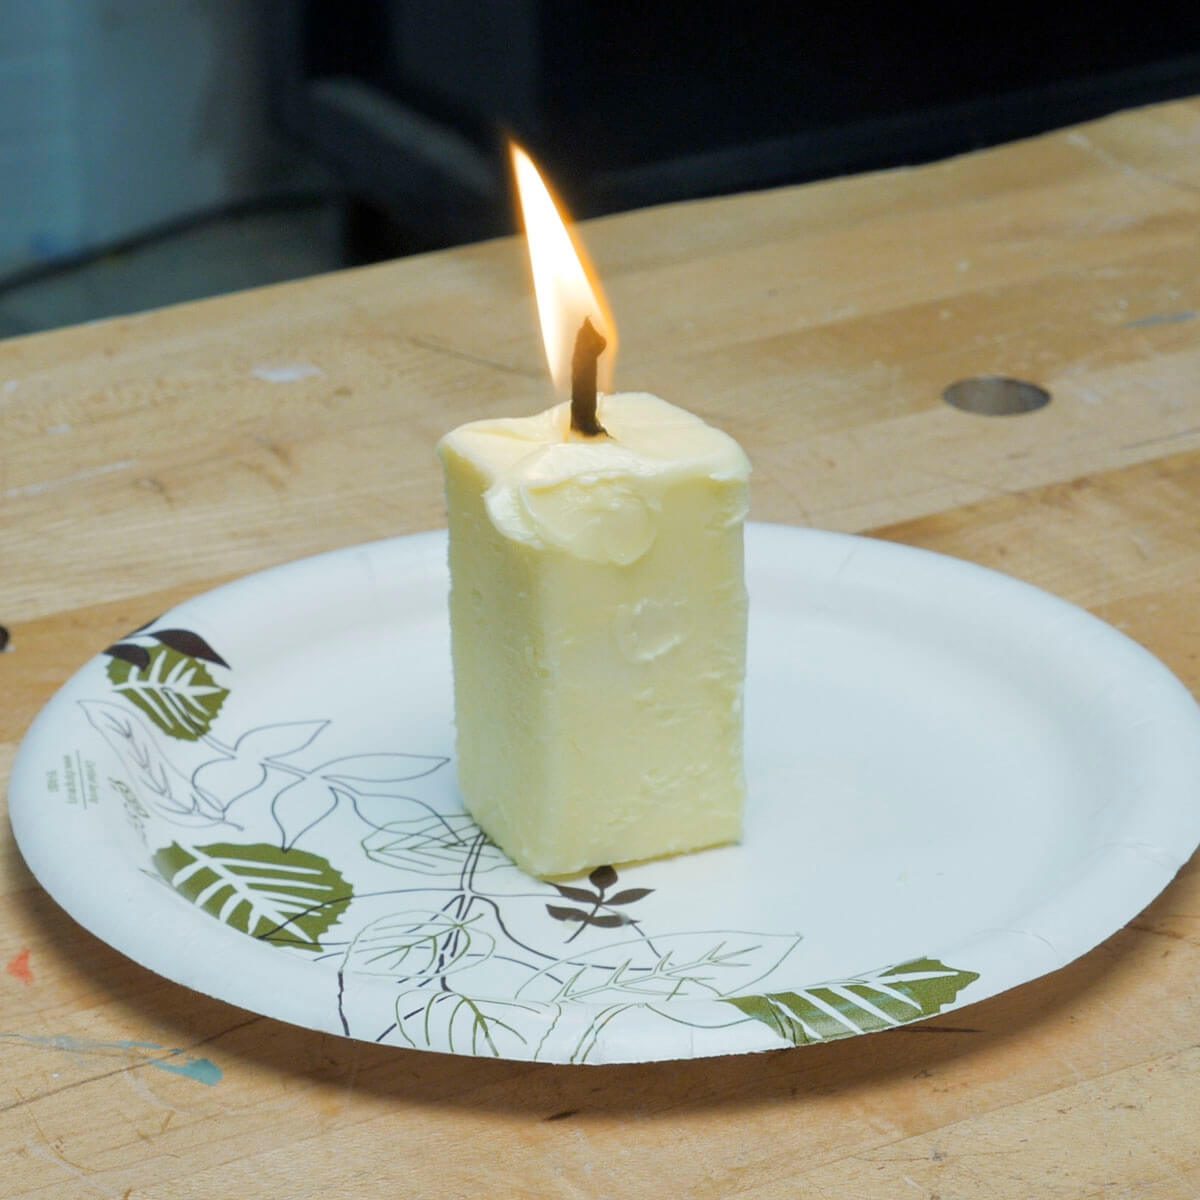 Make an emergency candle